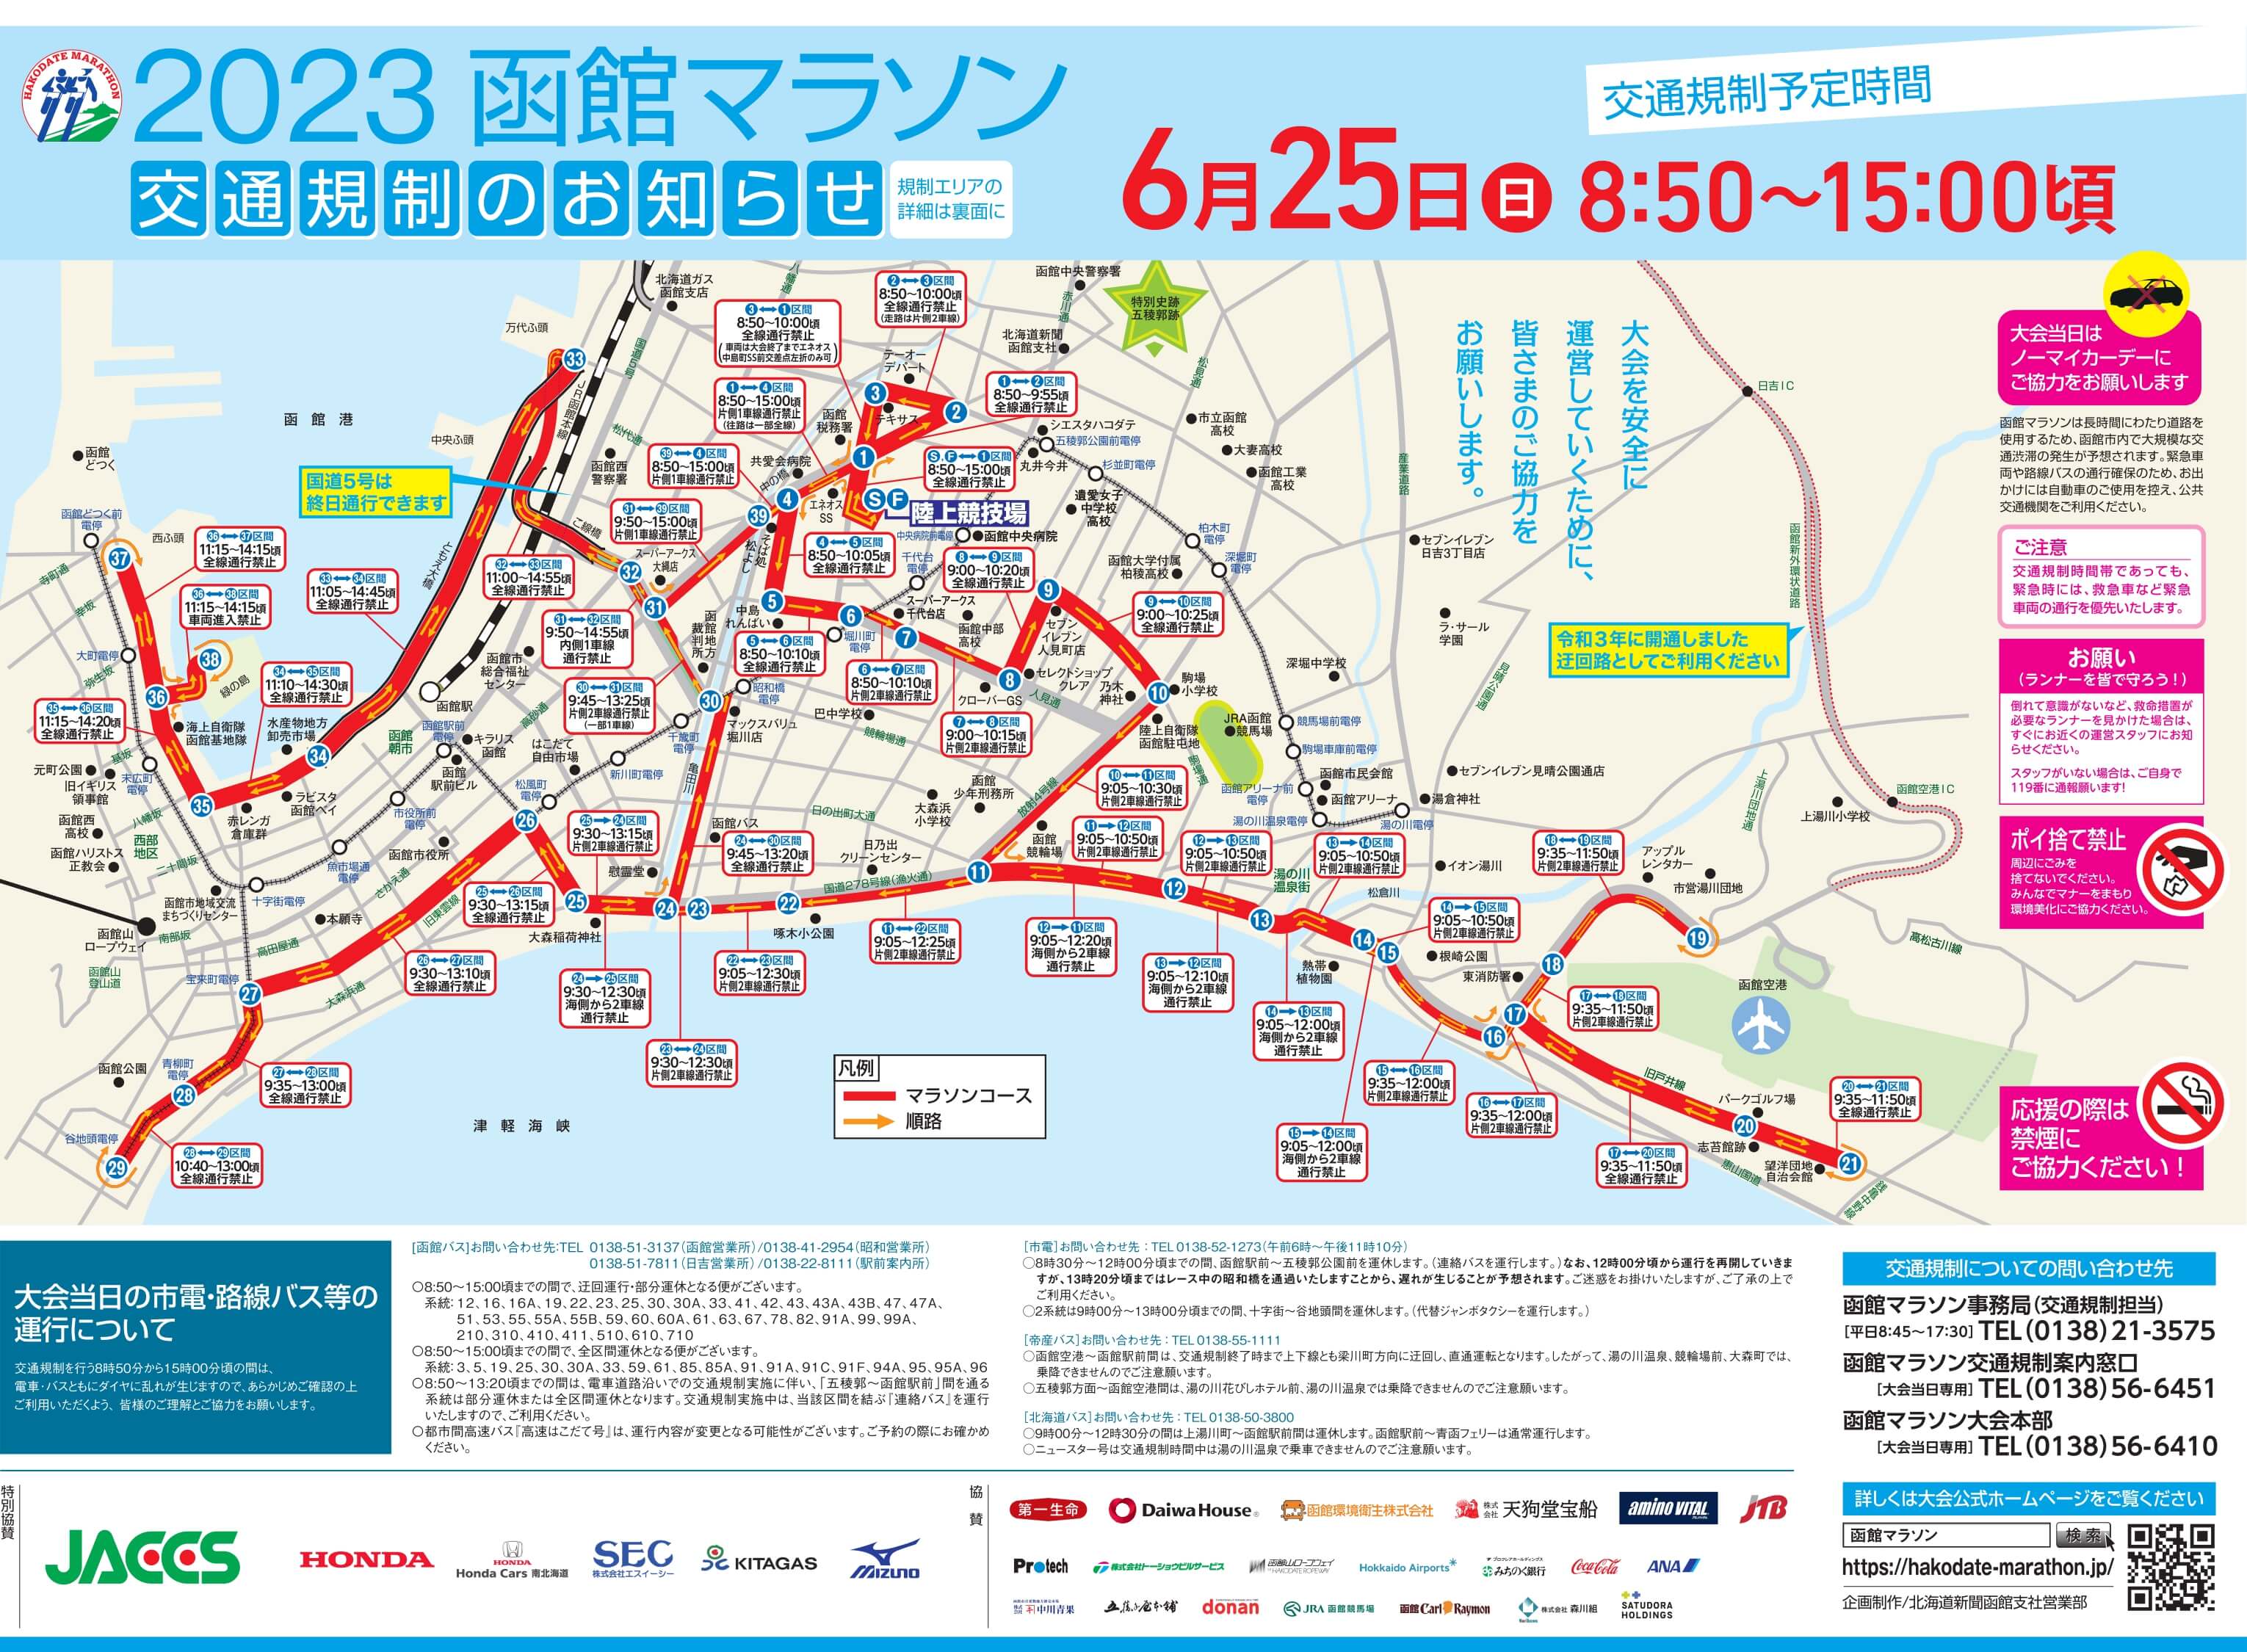 2023函館マラソン交通規制のお知らせ